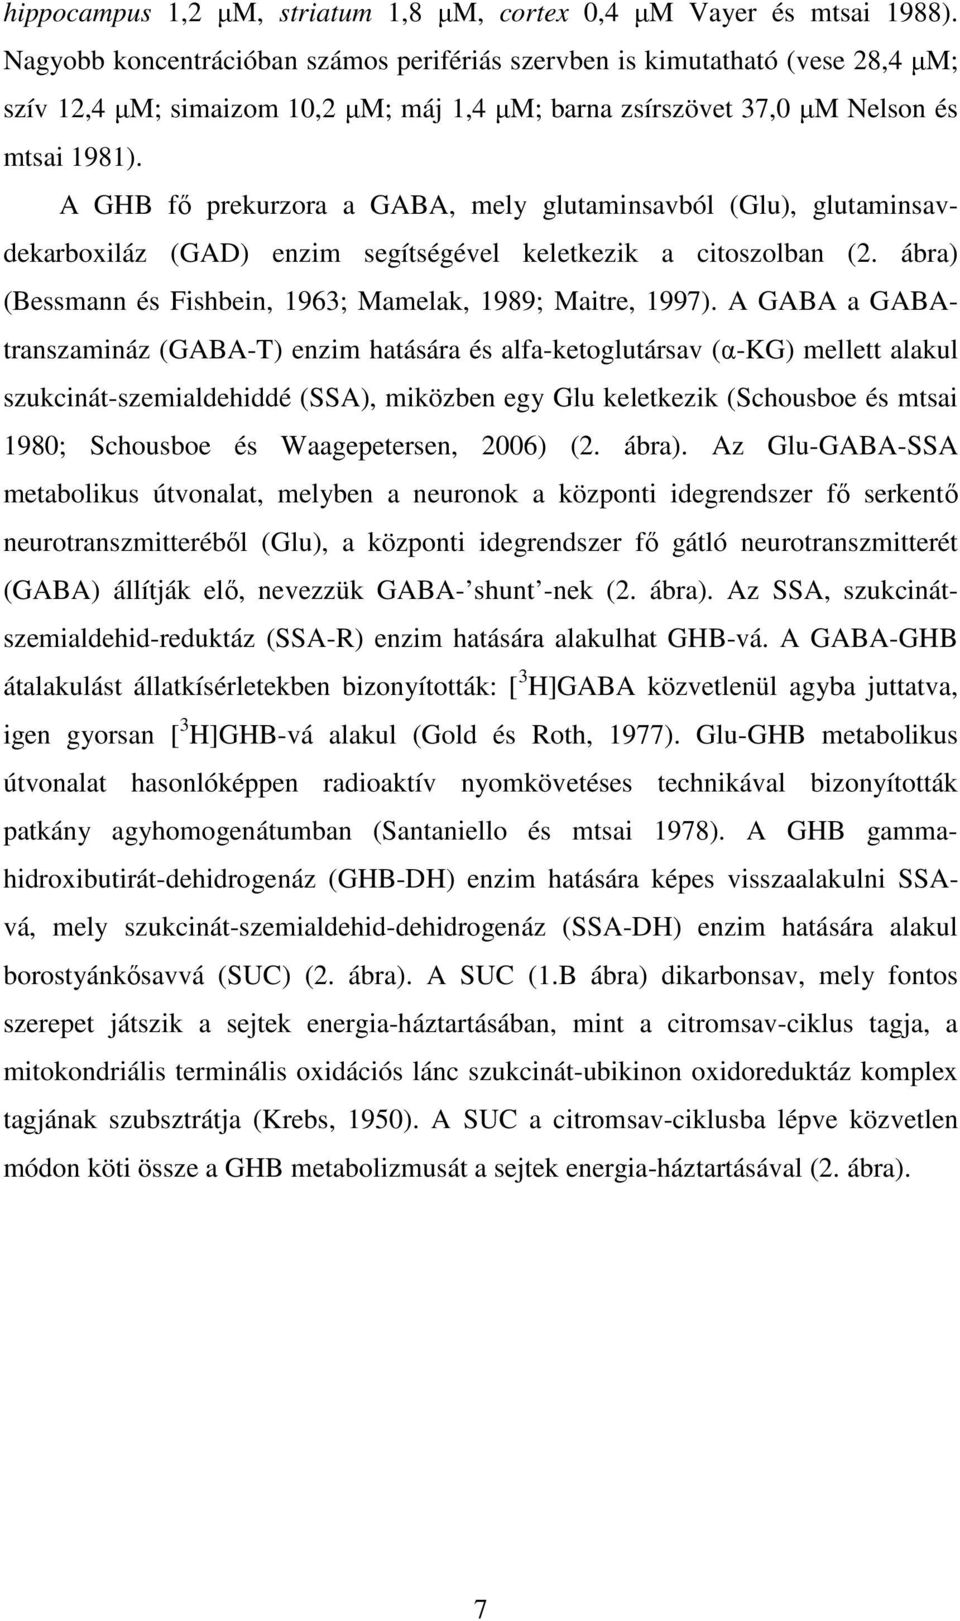 A GHB fő prekurzora a GABA, mely glutaminsavból (Glu), glutaminsavdekarboxiláz (GAD) enzim segítségével keletkezik a citoszolban (2. ábra) (Bessmann és Fishbein, 1963; Mamelak, 1989; Maitre, 1997).